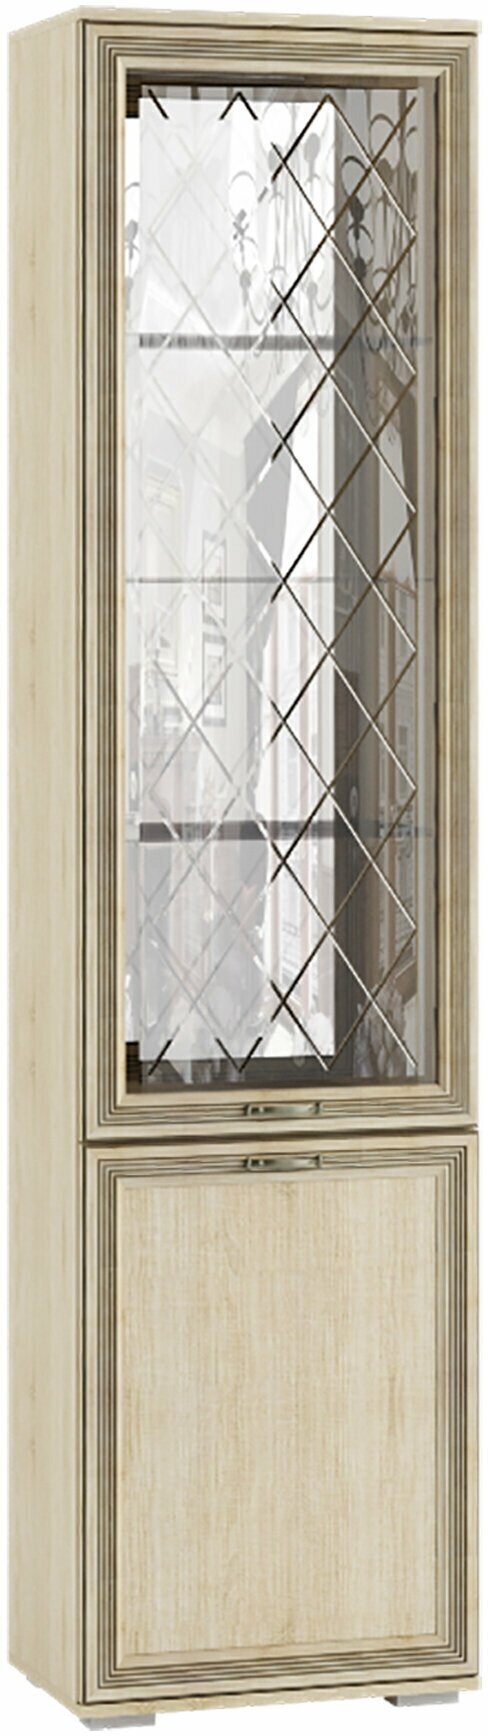 Гостиная Ливорно шкаф-пенал с витриной ЛШ-4 дуб сонома